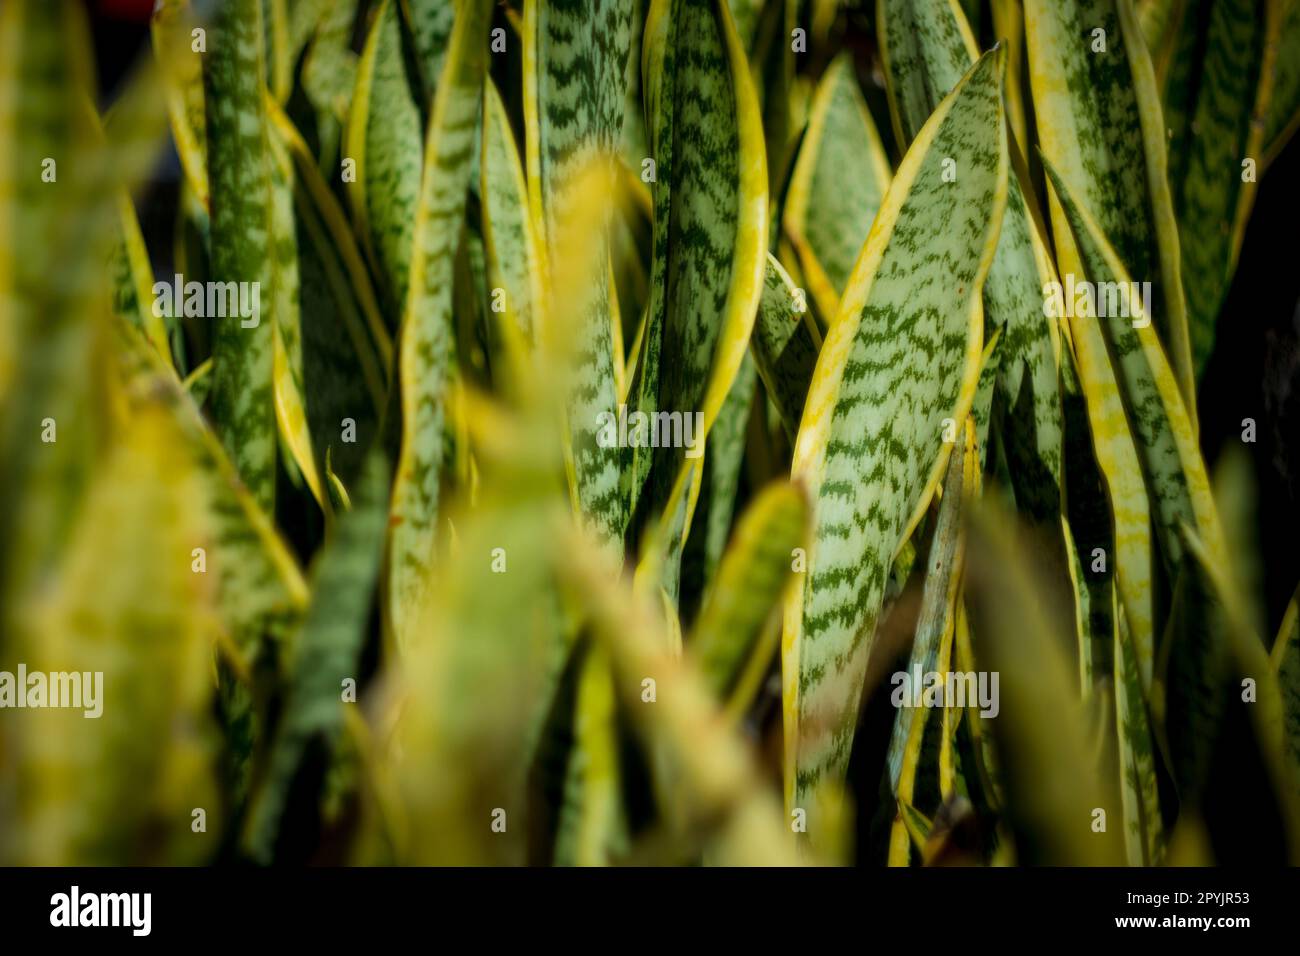 Una vista ravvicinata di una lussureggiante pianta di sanseveria con foglie verdi scure e bordi gialli. Le foglie sono spesse e a forma di spada. Foto Stock